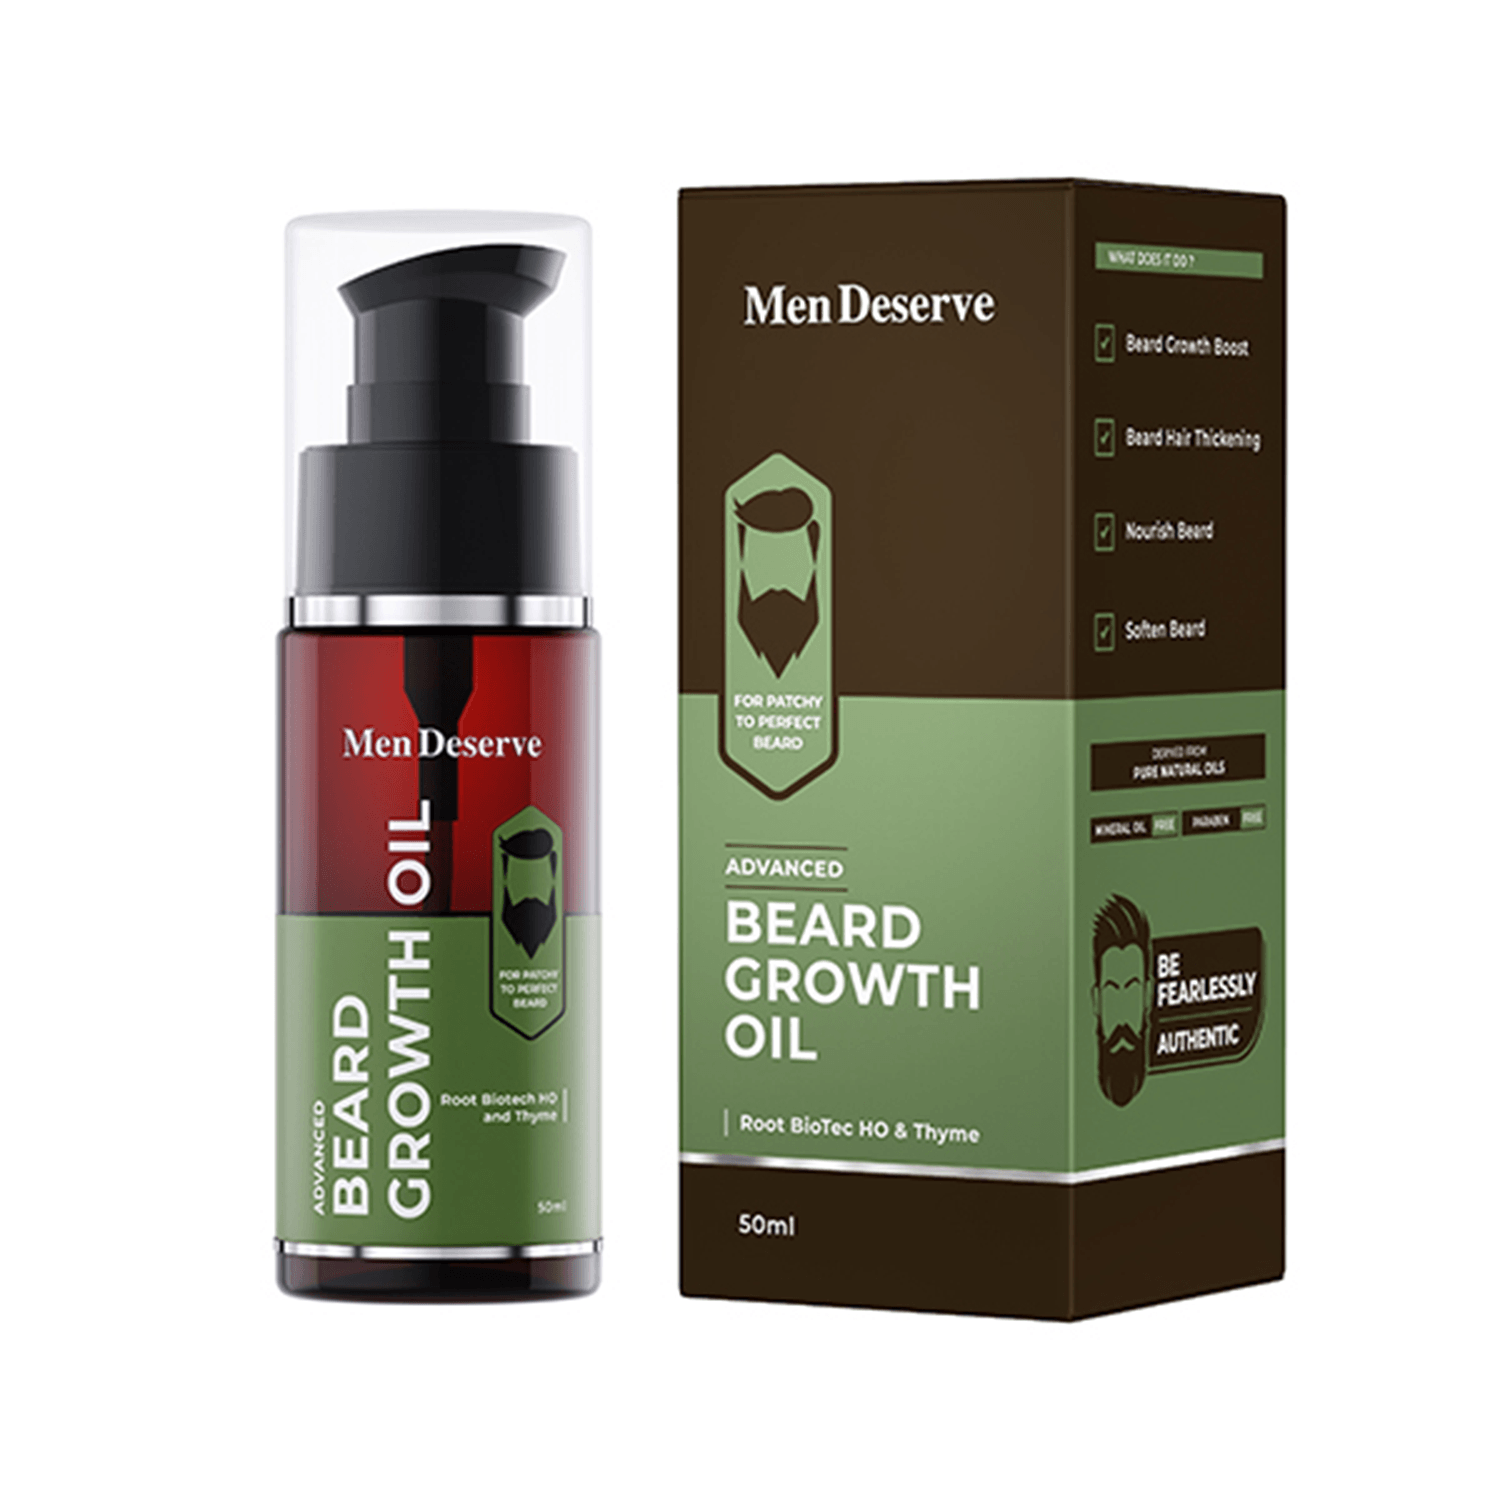 Men Deserve | Men Deserve Advanced Beard Growth Oil (50ml)